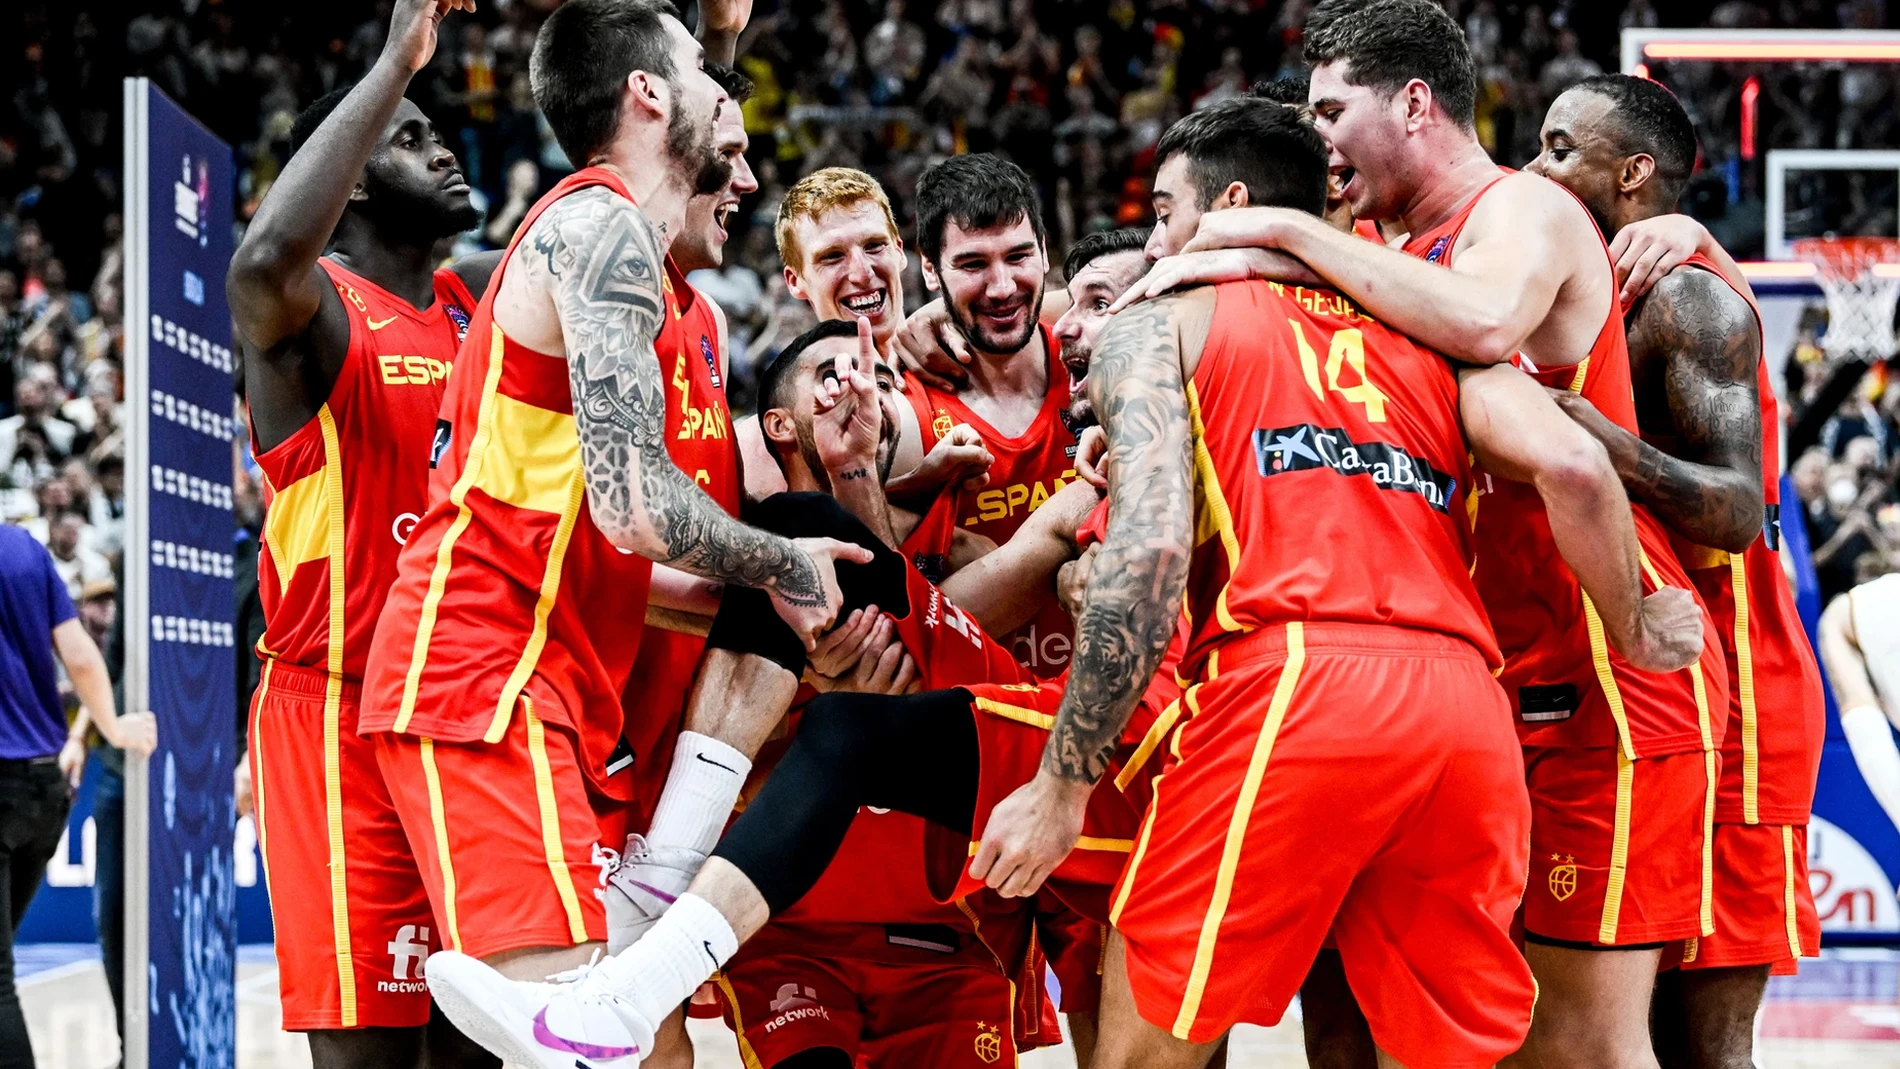 Deportes Antena 3 (17-09-22) La FIBA alucina con España: &quot;En el baloncesto juegan 10 jugadores y al final siempre gana España&quot;